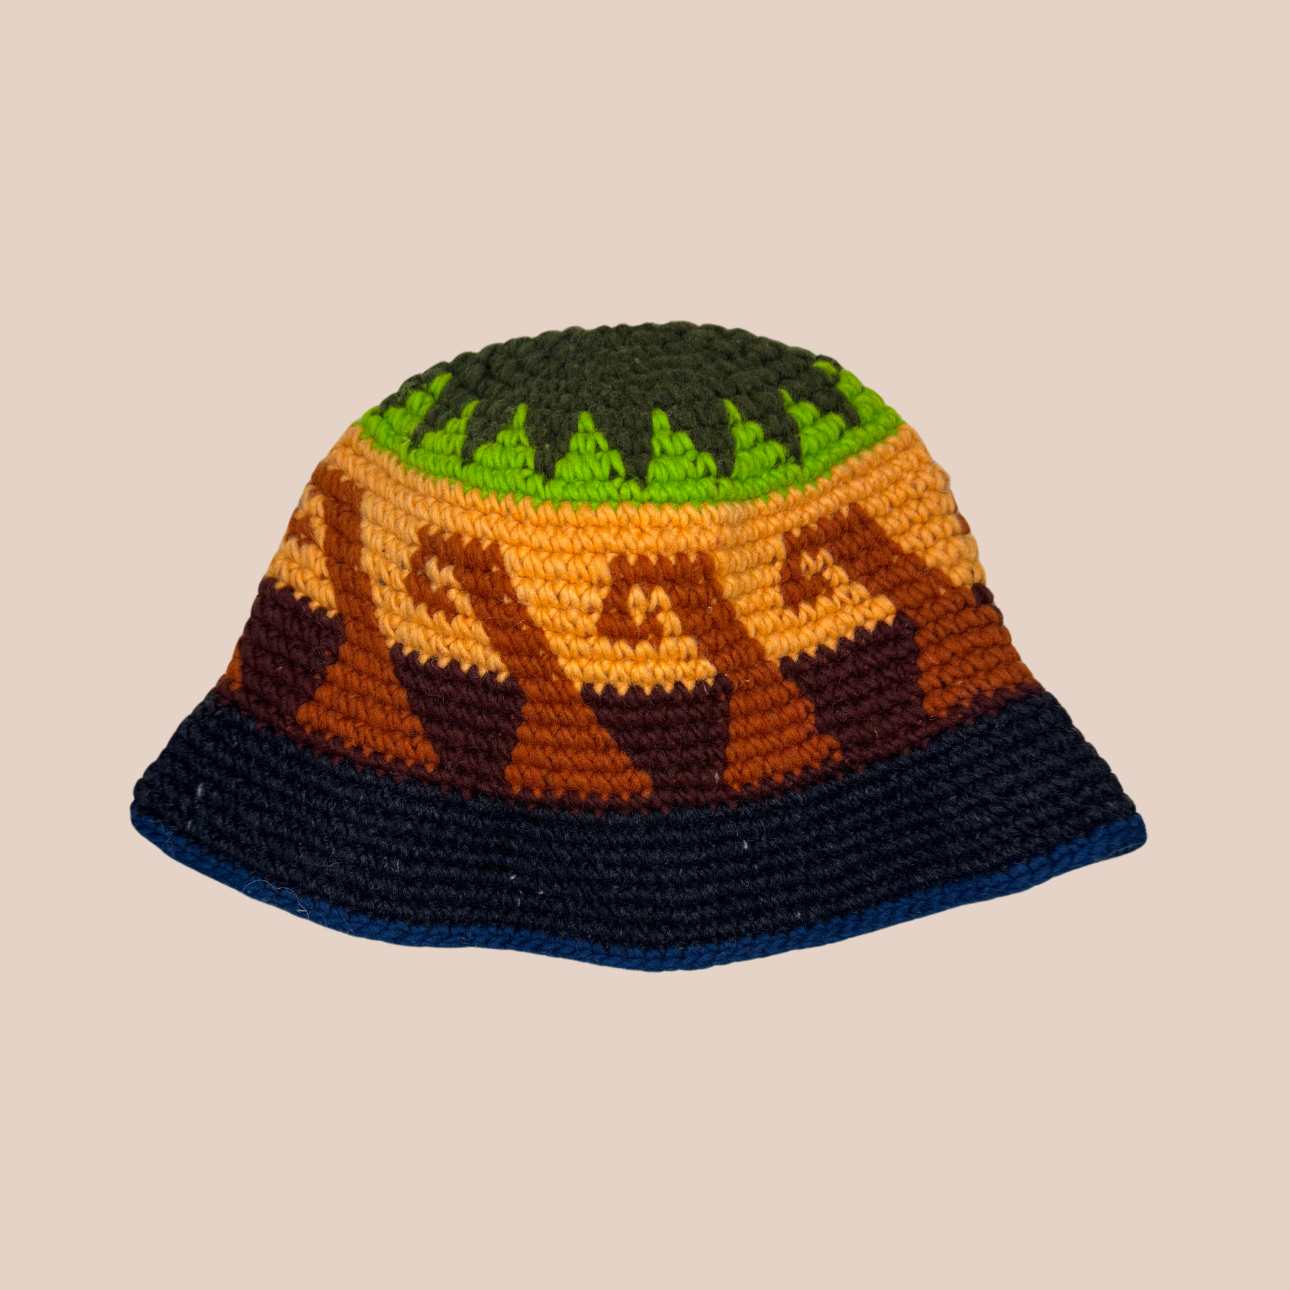 Image du bucket hat de Maison Badigo, bucket hat (bob) en laine crocheté multicolore et tendance